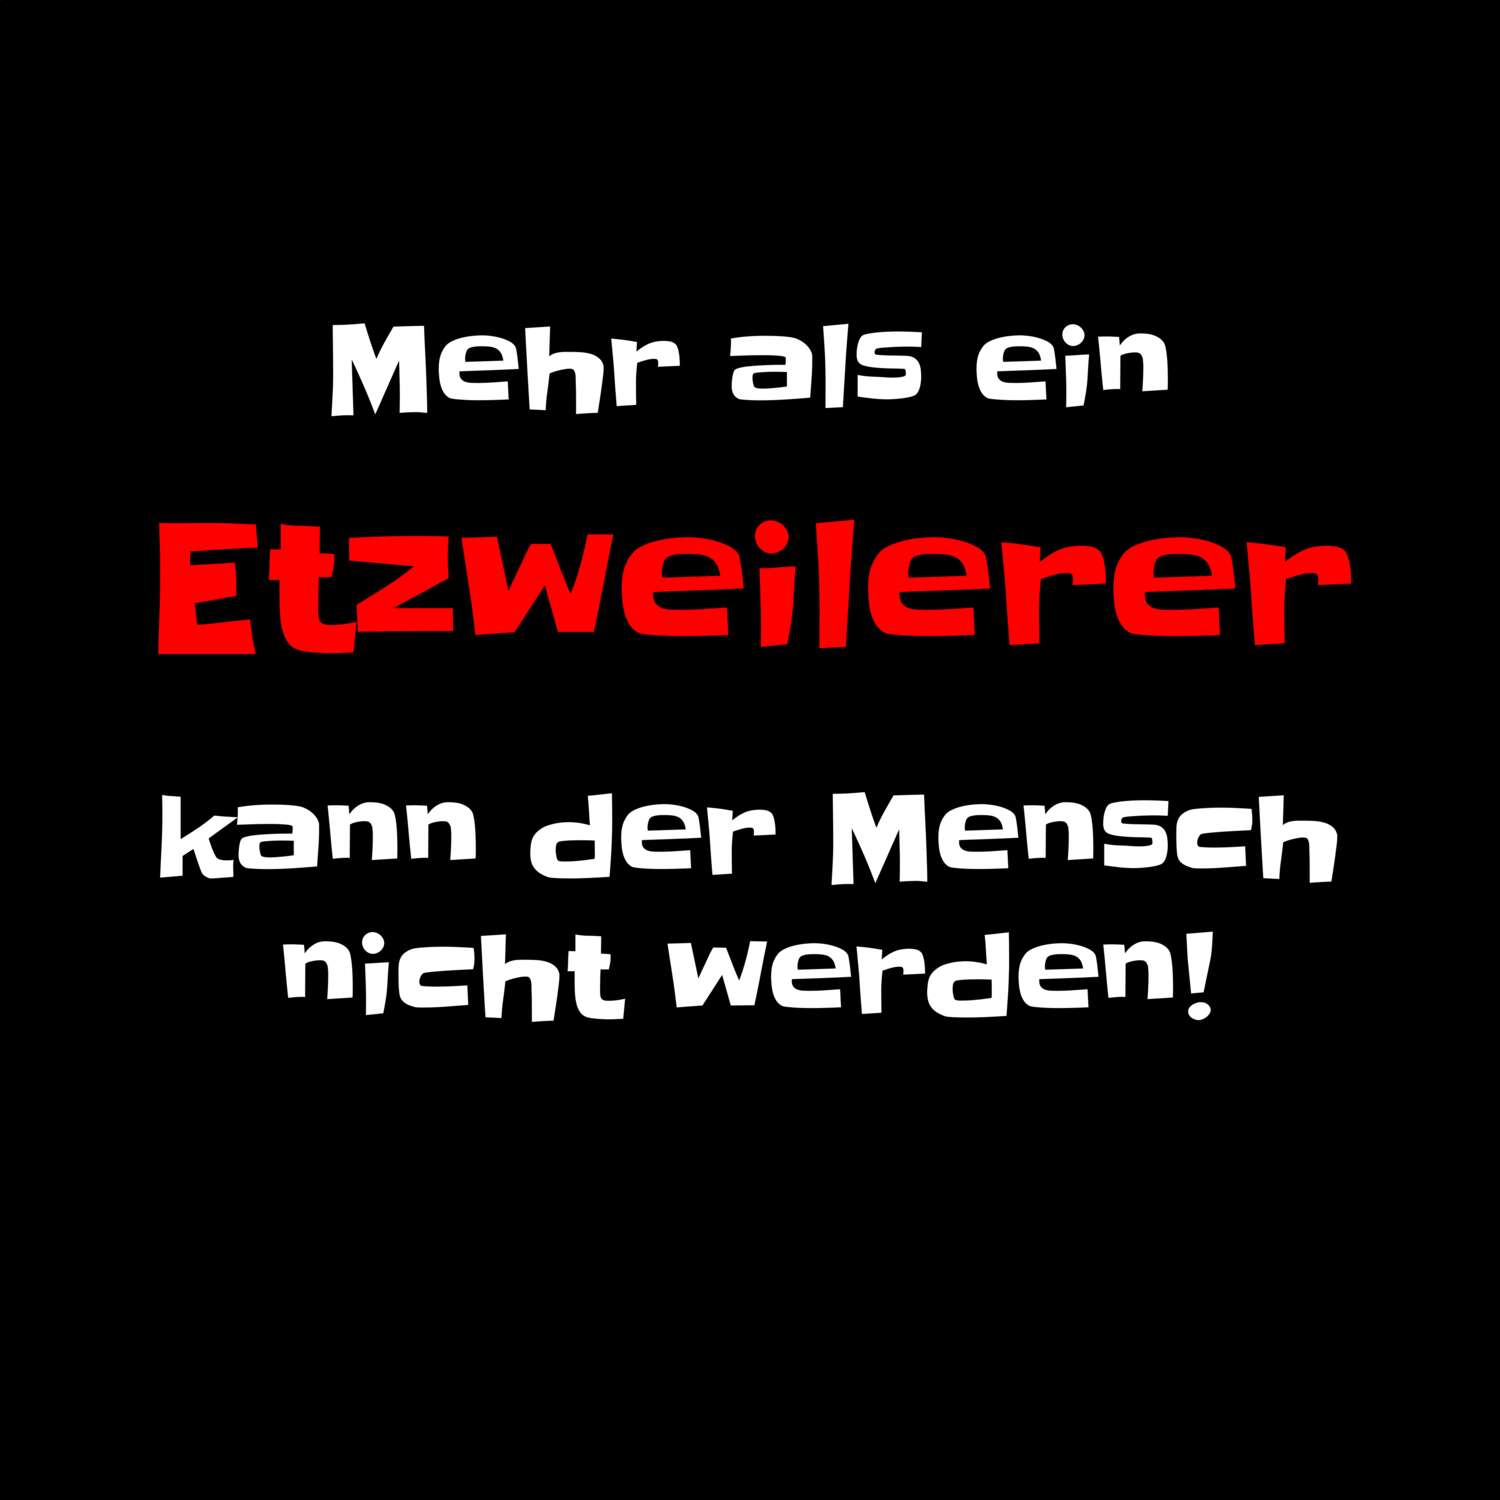 Etzweiler T-Shirt »Mehr als ein«